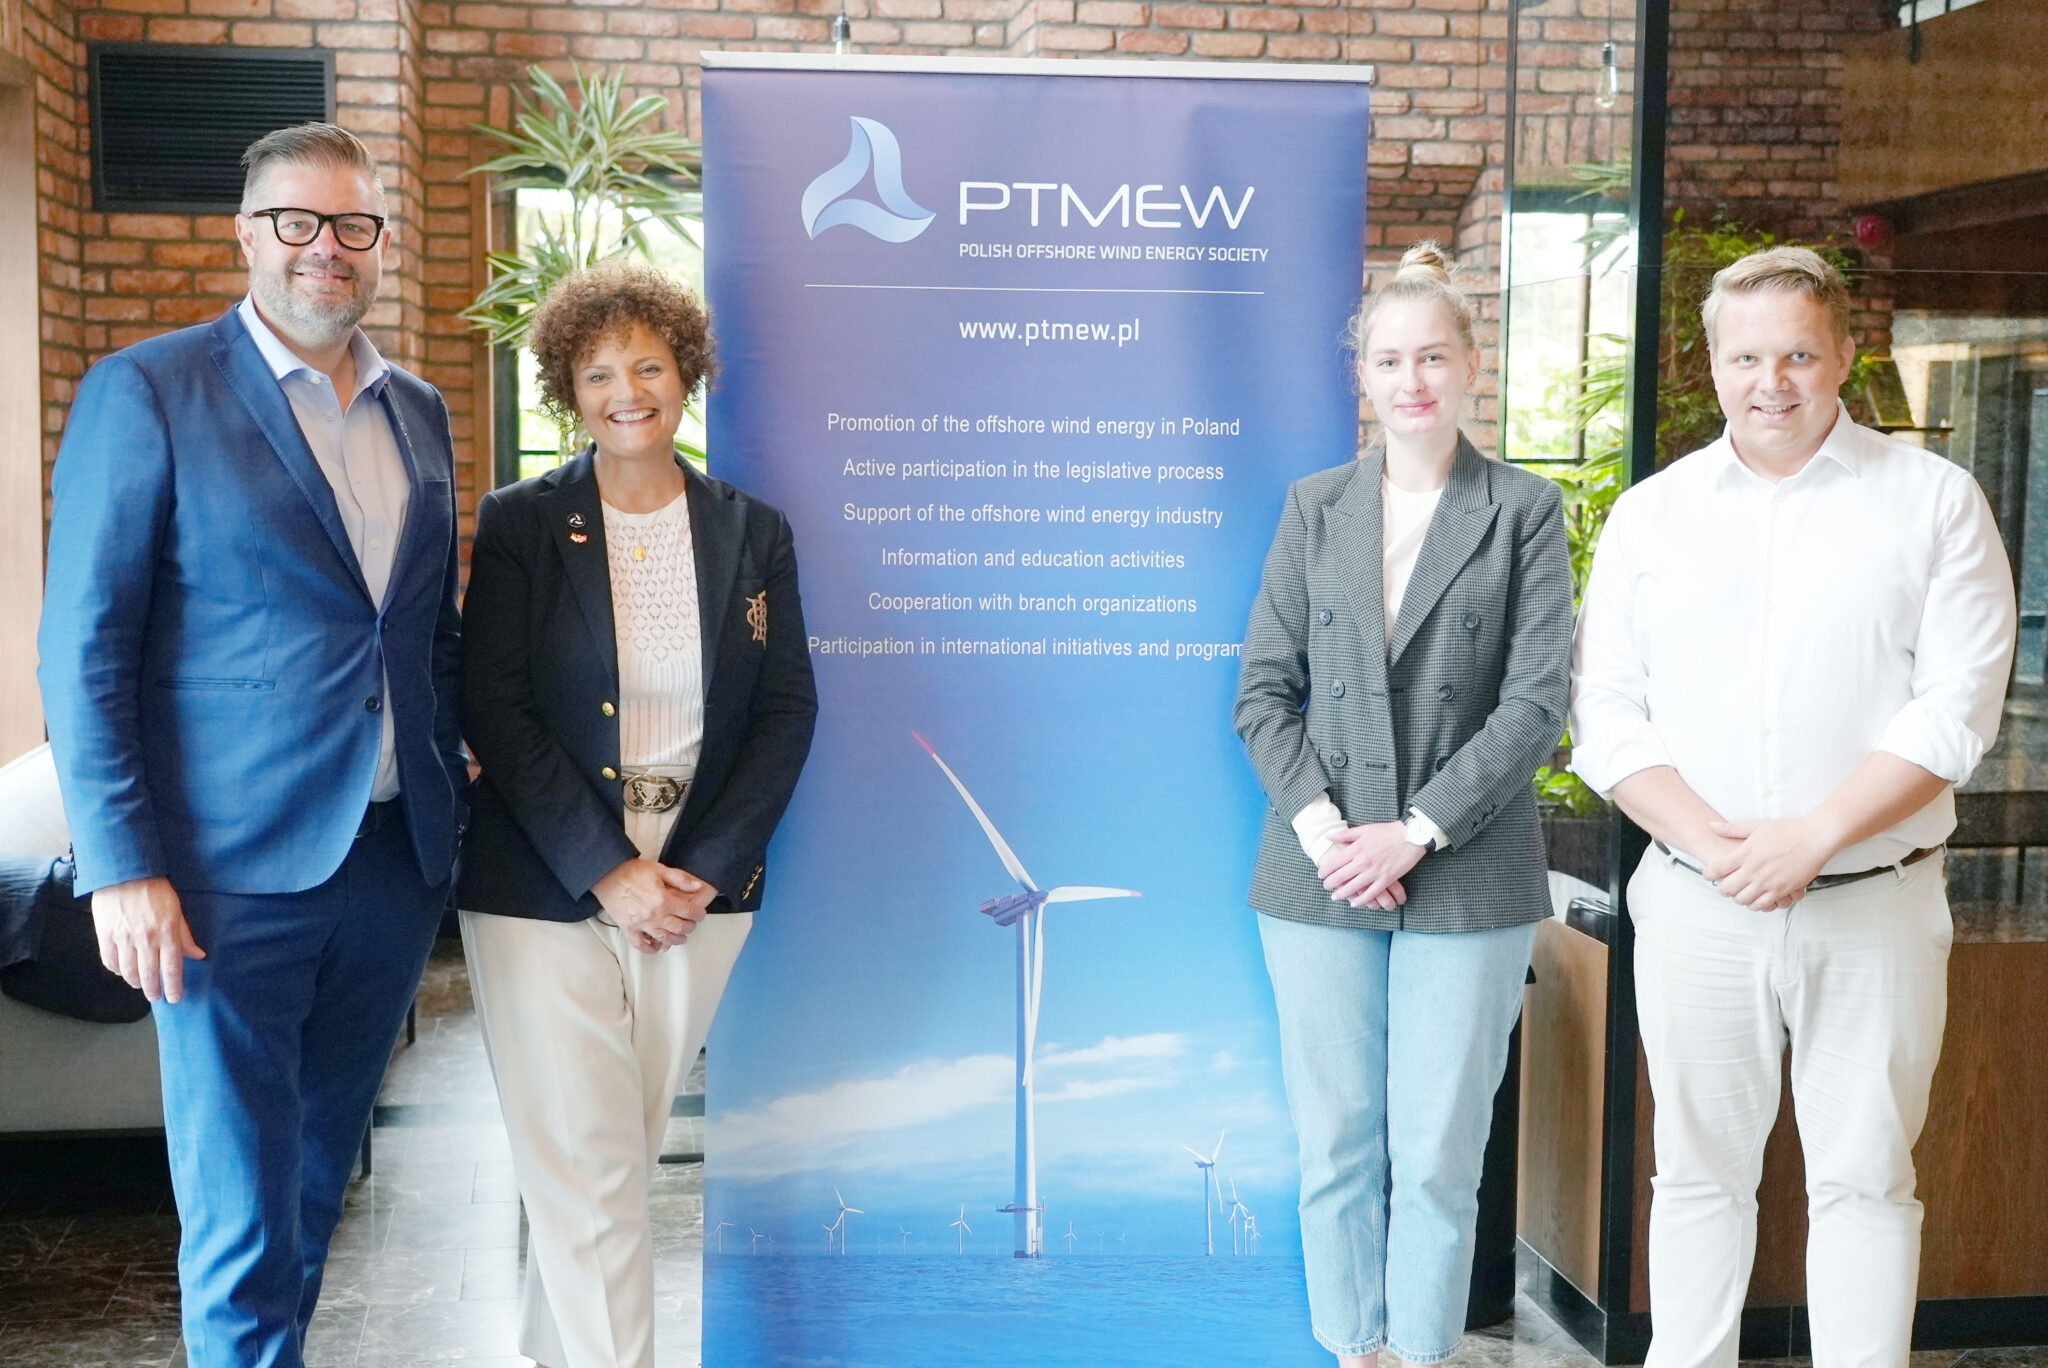 Przedstawiciele NOW spotkali się z PTMEW, fot. Norwegian Offshore Wind